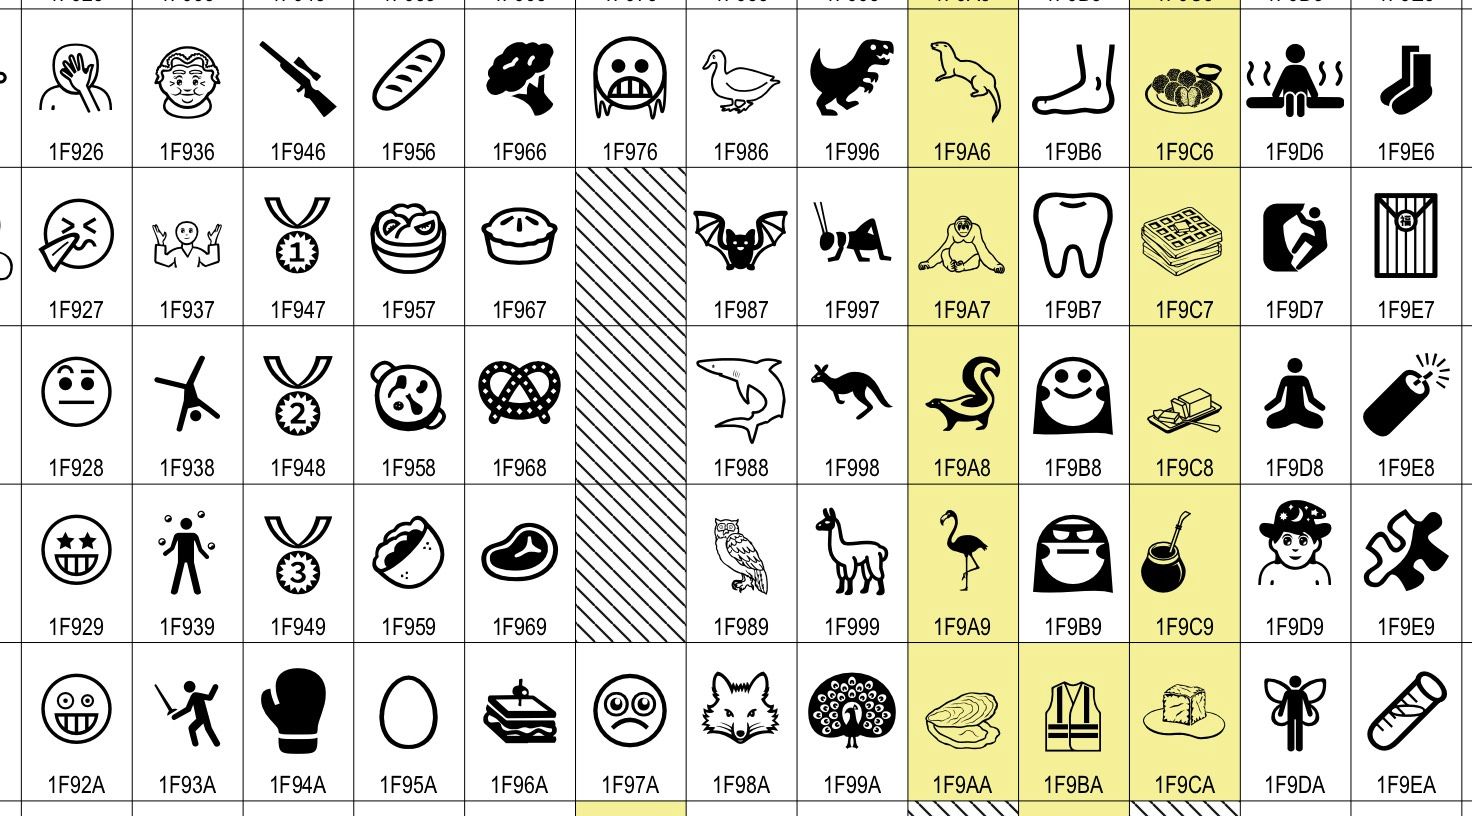 Unicode